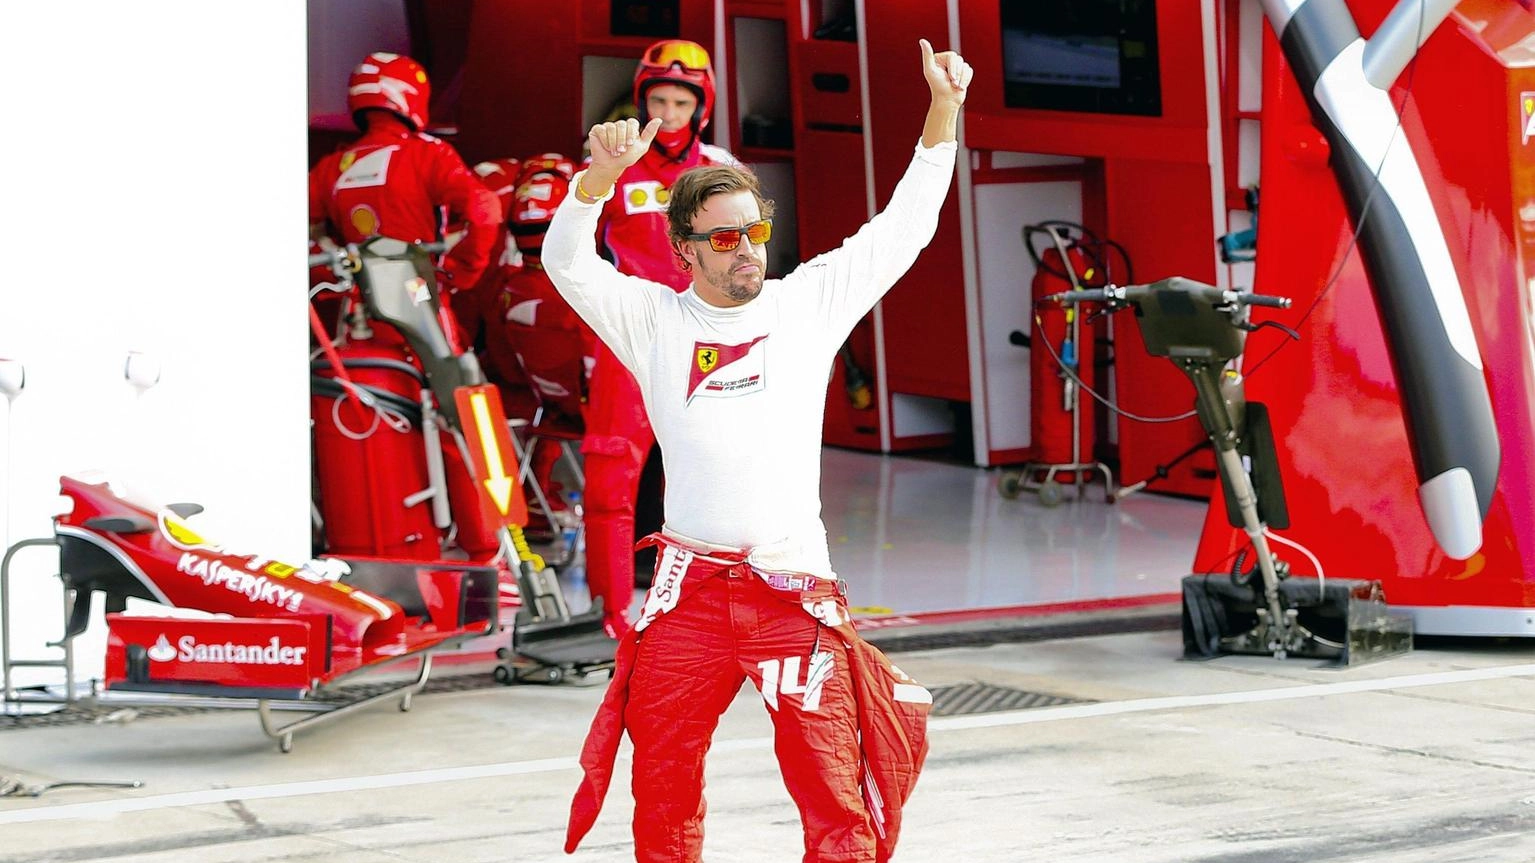 

La spinta di Monza per tornare a vincere: Fernando Alonso e l'Aston Martin